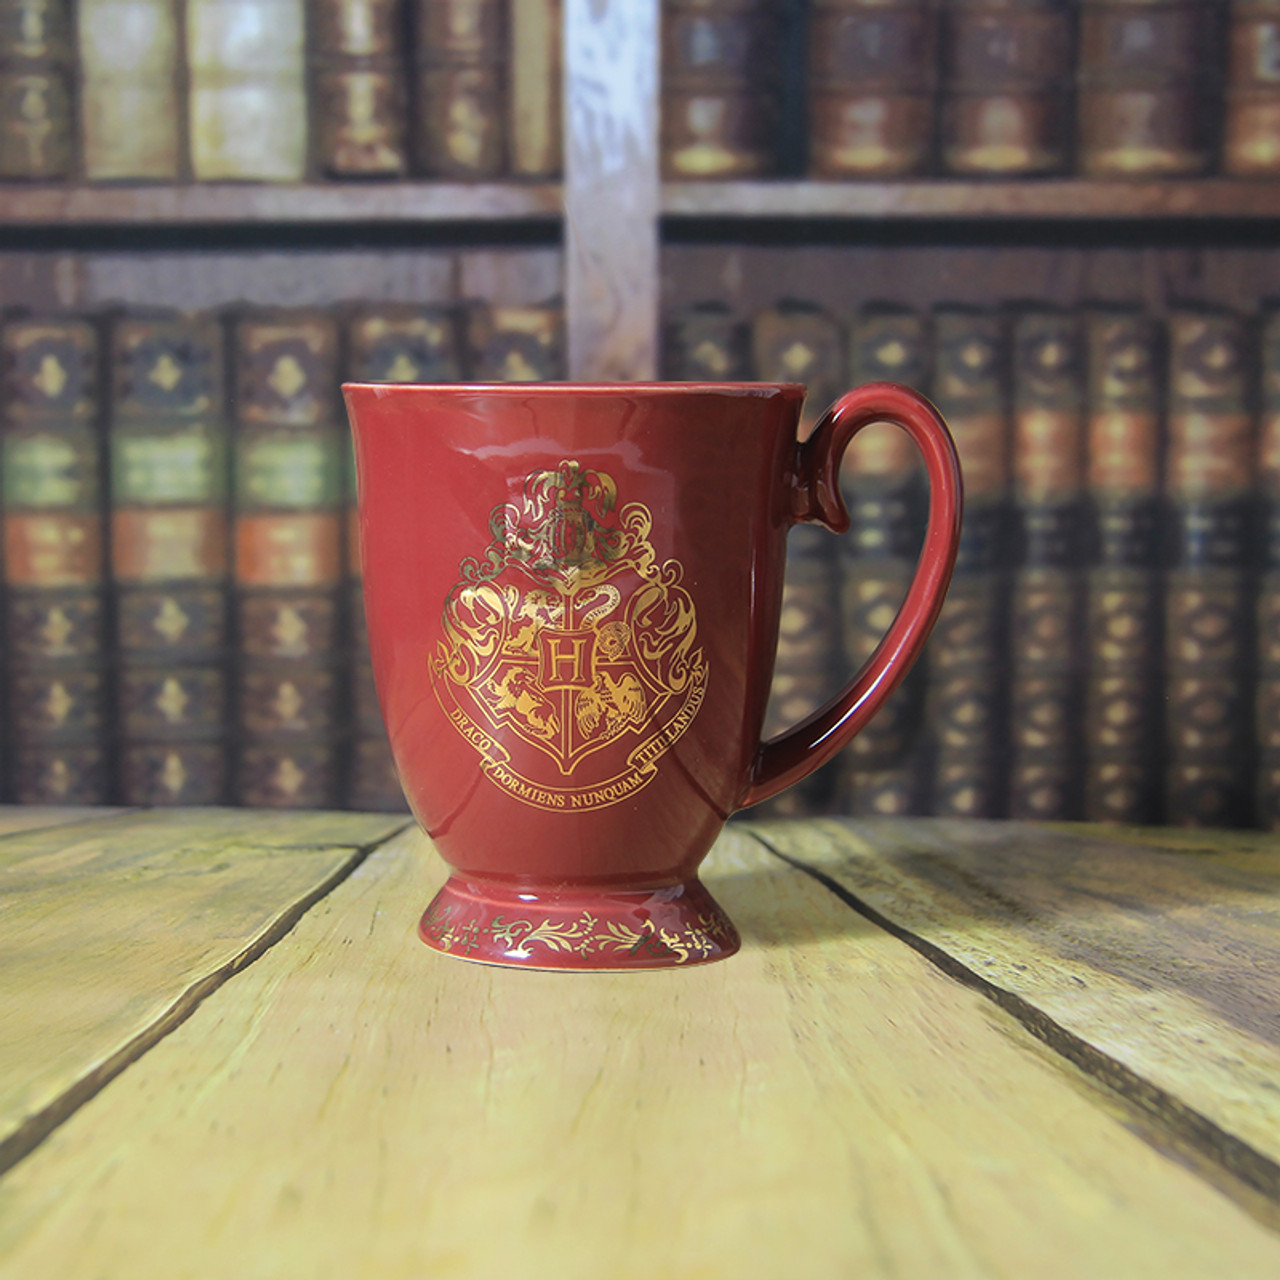 Harry Potter Hogwarts Coffee Mug - NerdKungFu